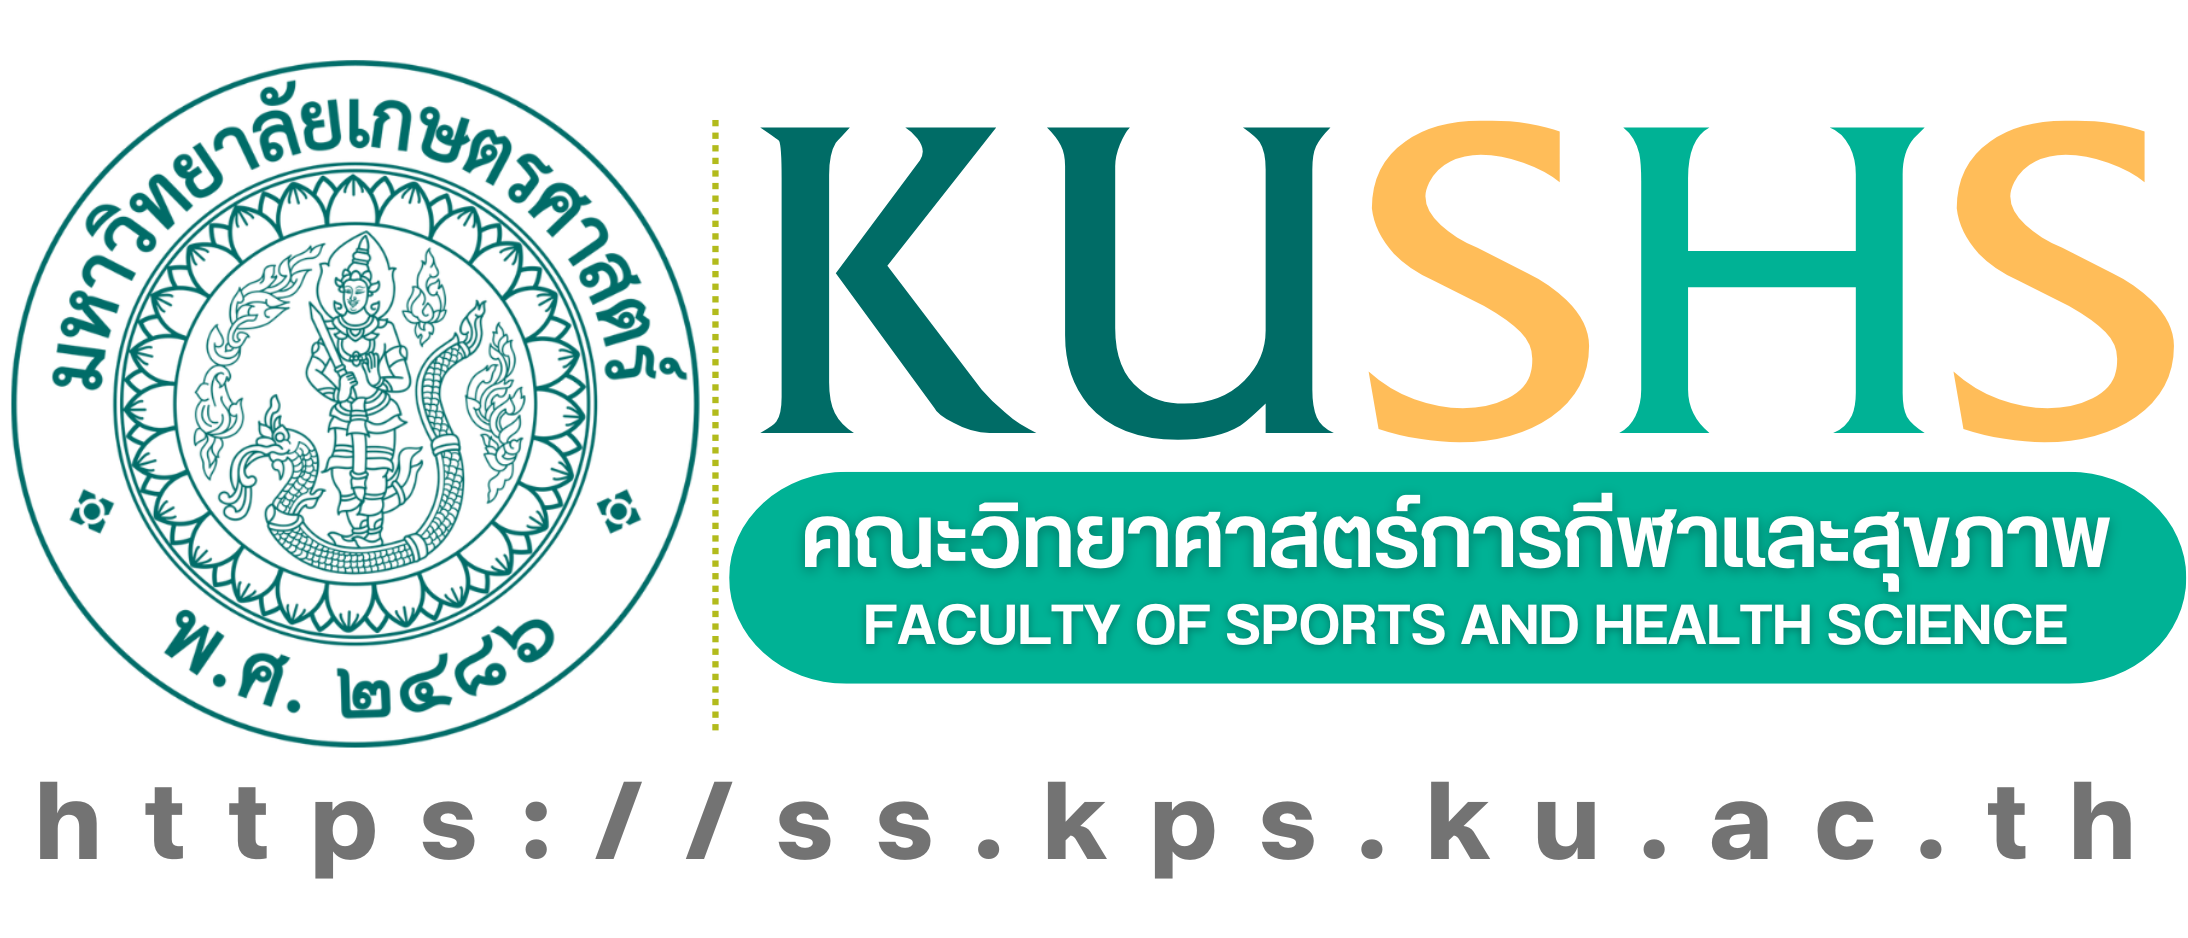 คณะวิทยาศาสตร์การกีฬา มหาวิทยาลัยเกษตรศาสตร์ Faculty of Sports Science, KU : Thailand